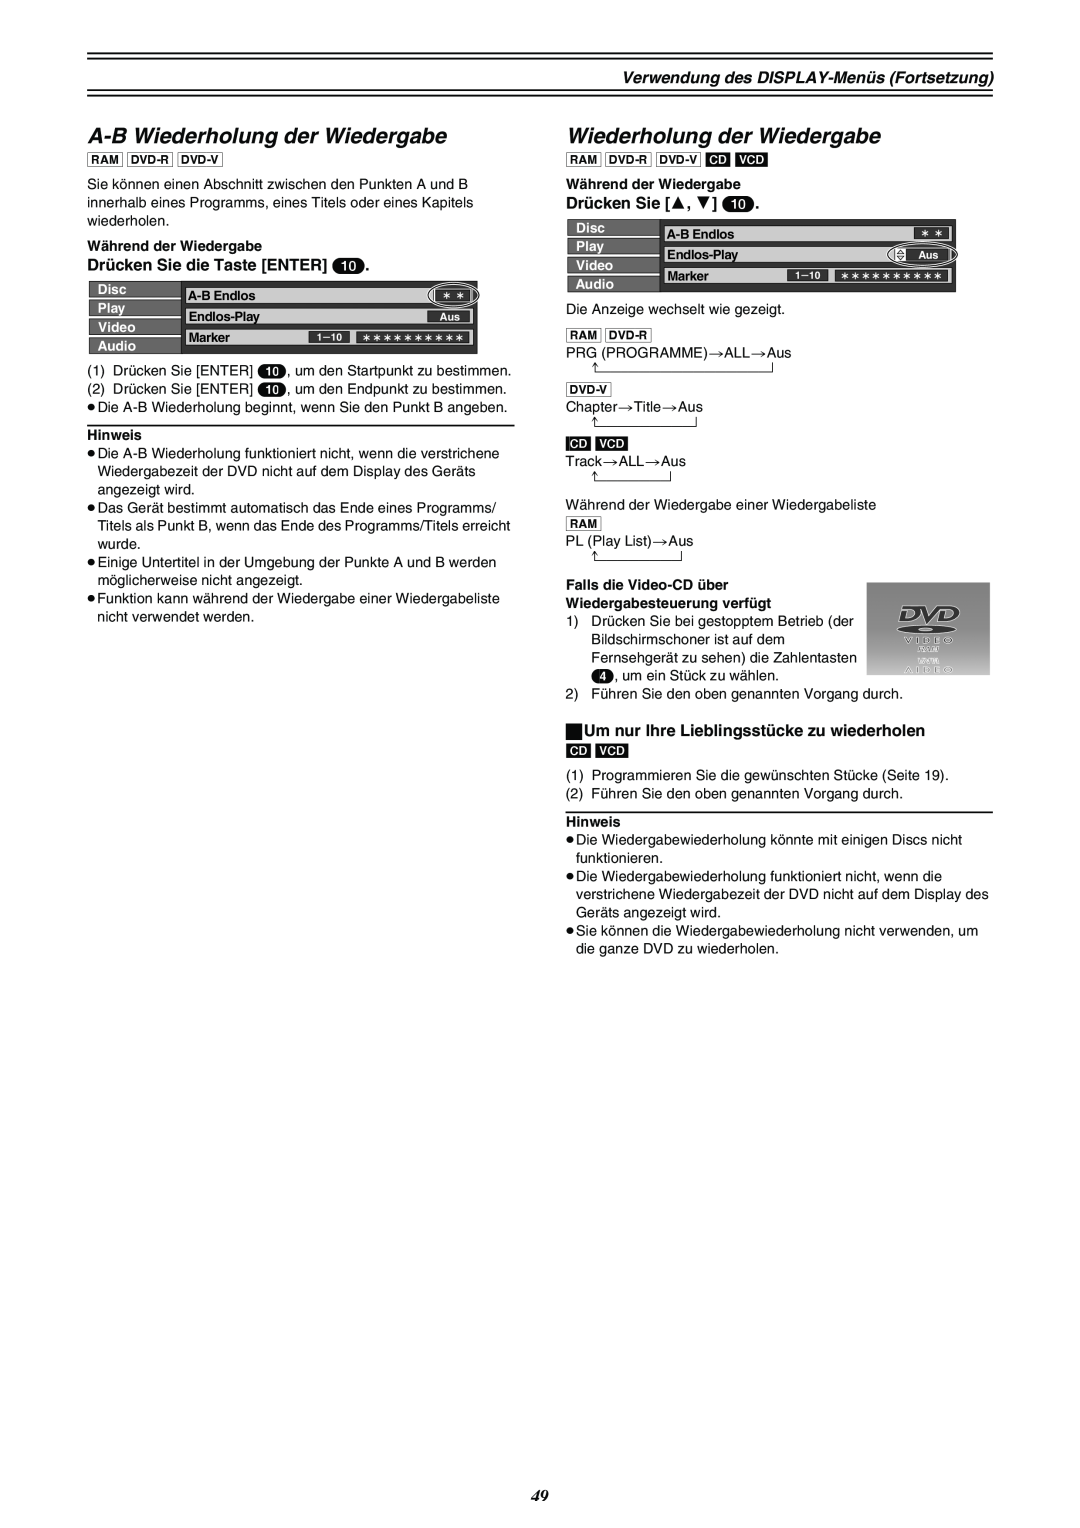 Panasonic DMR-E30 manual A-B Wiederholung der Wiedergabe, †††††††††† 